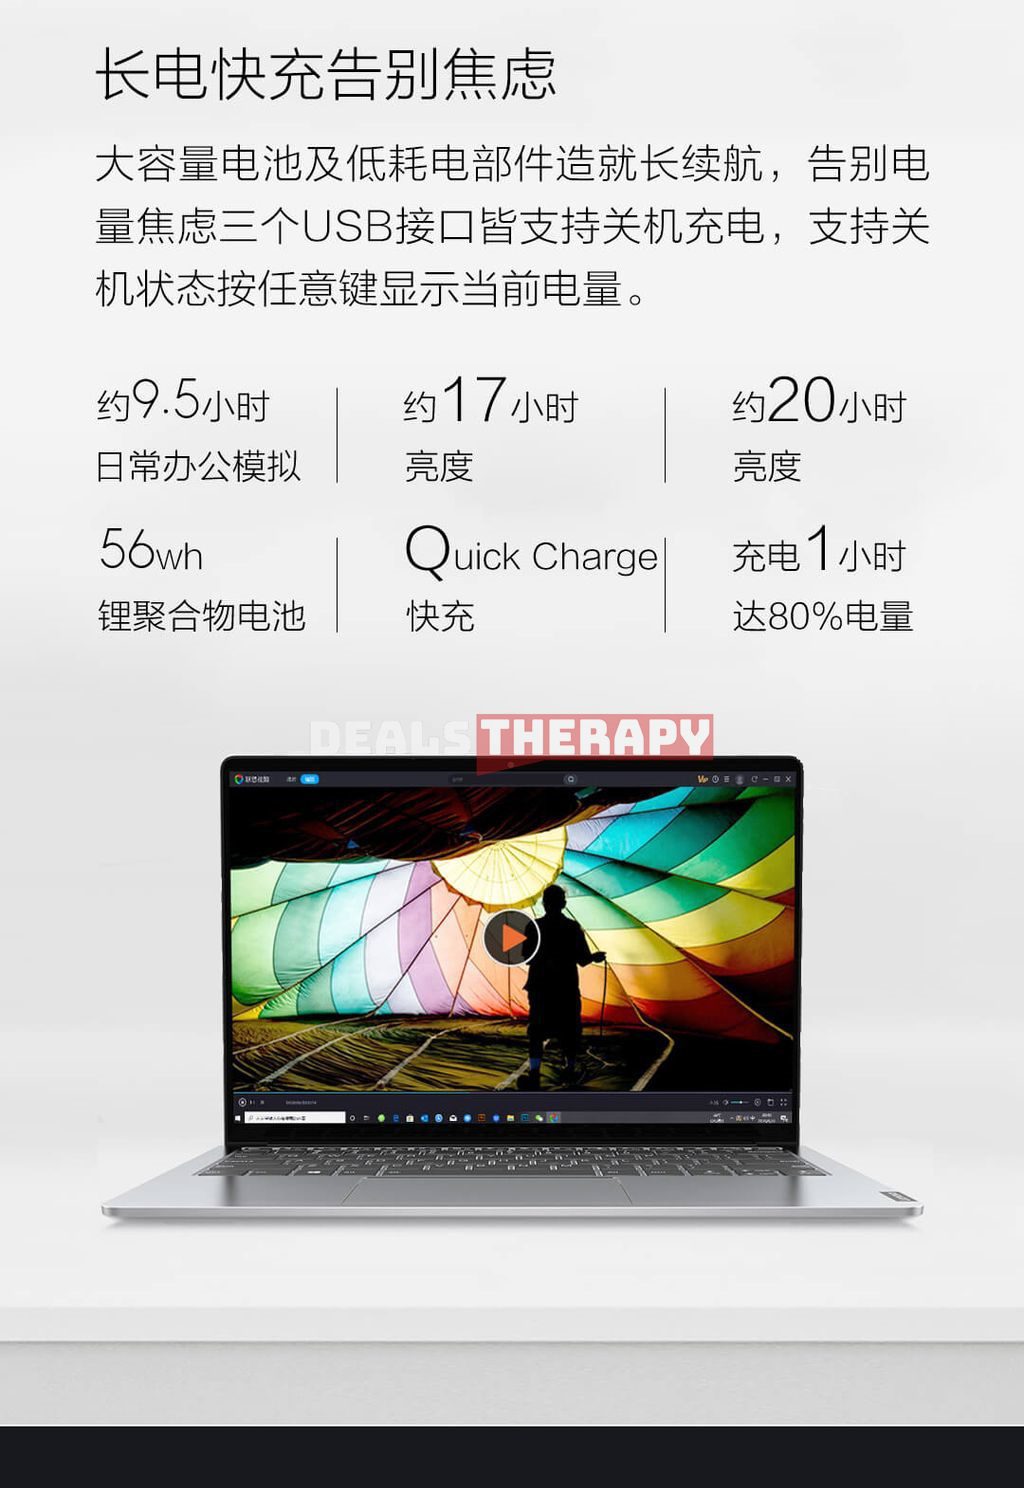 Lenovo Xiaoxin Pro 13